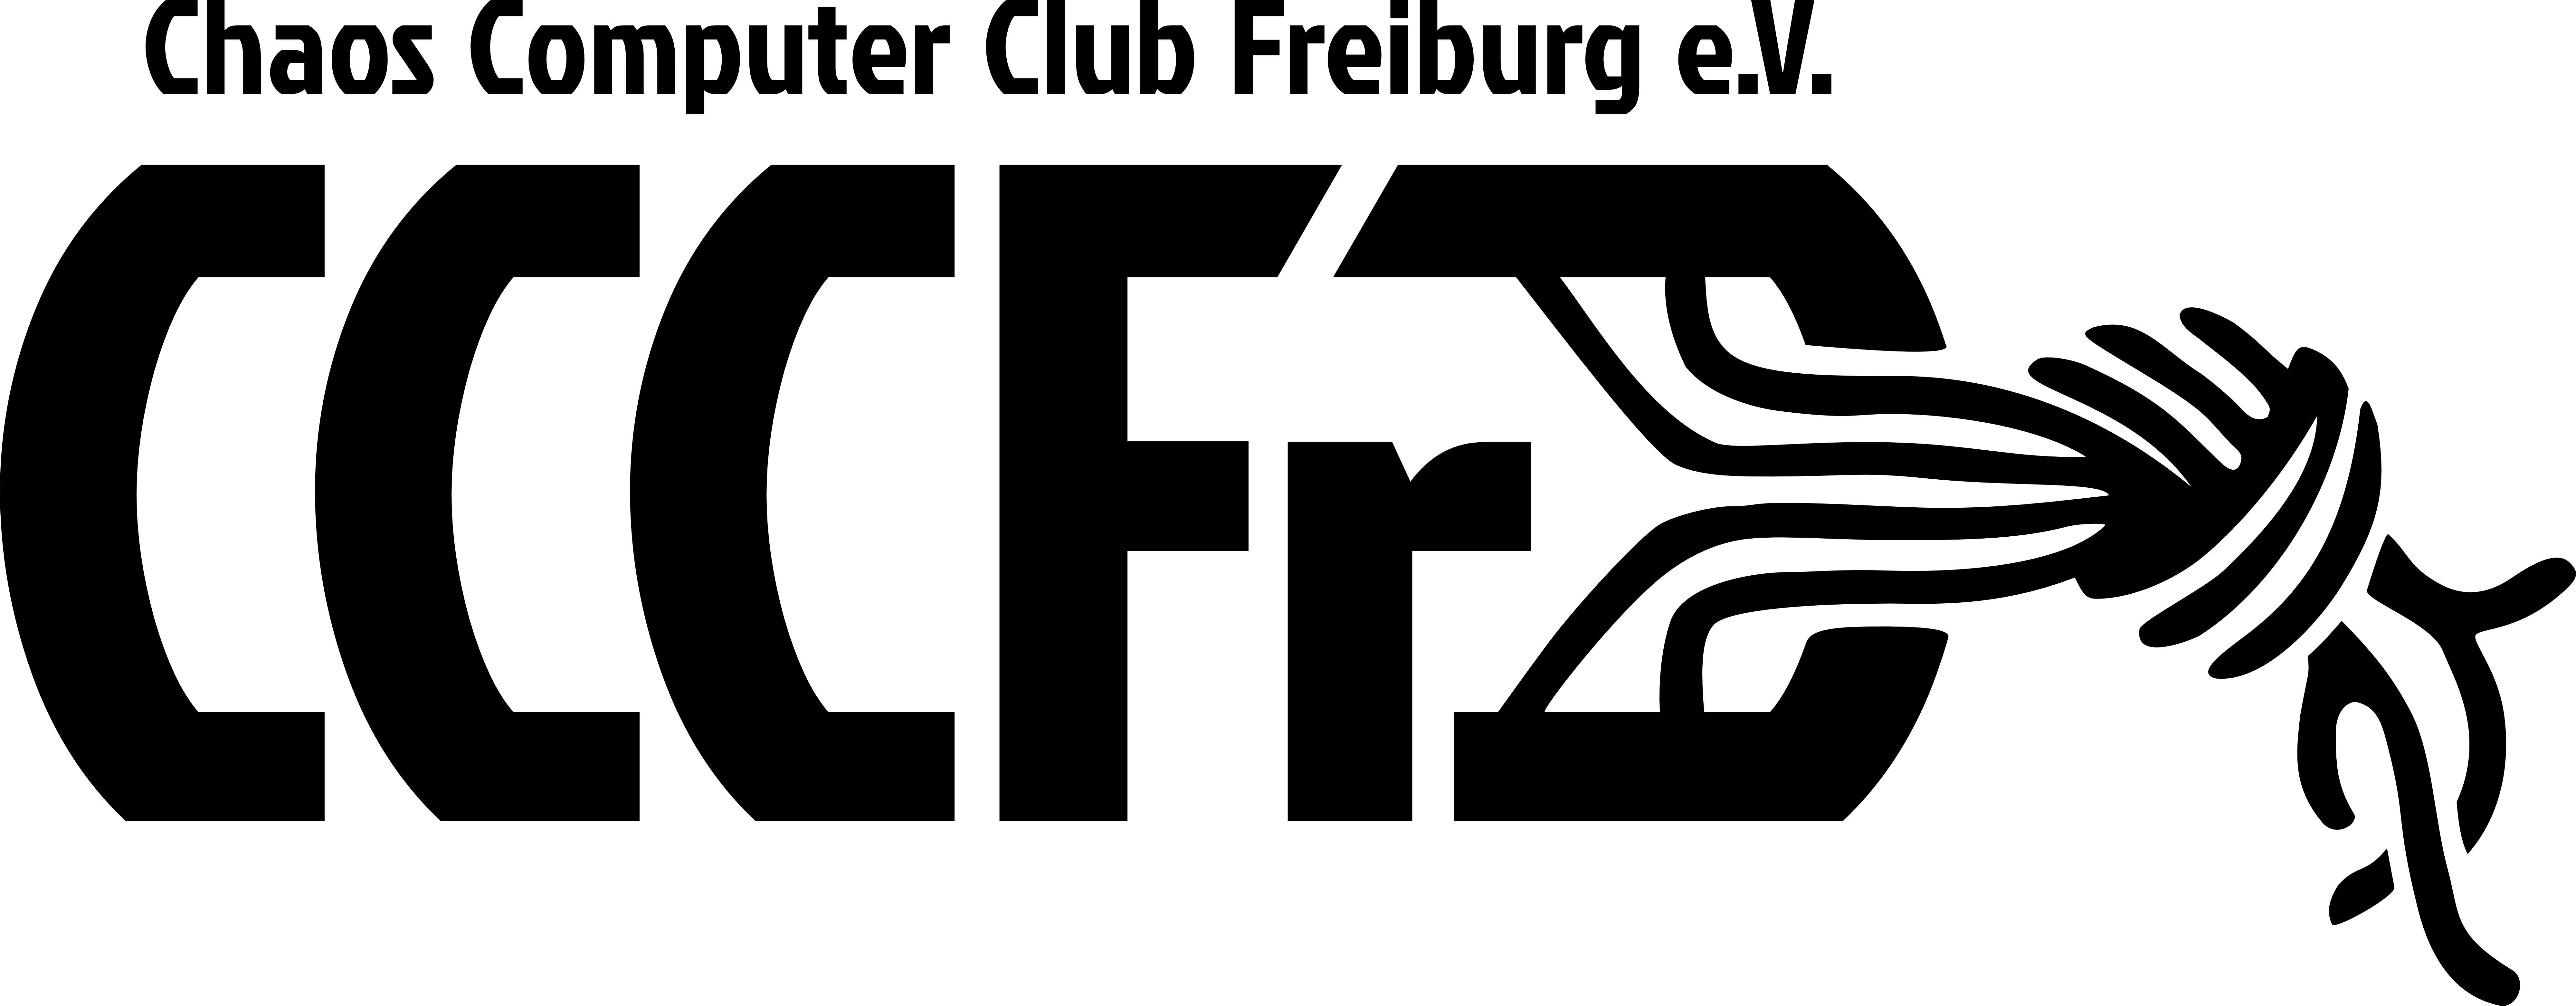 chaos computer club freiburg